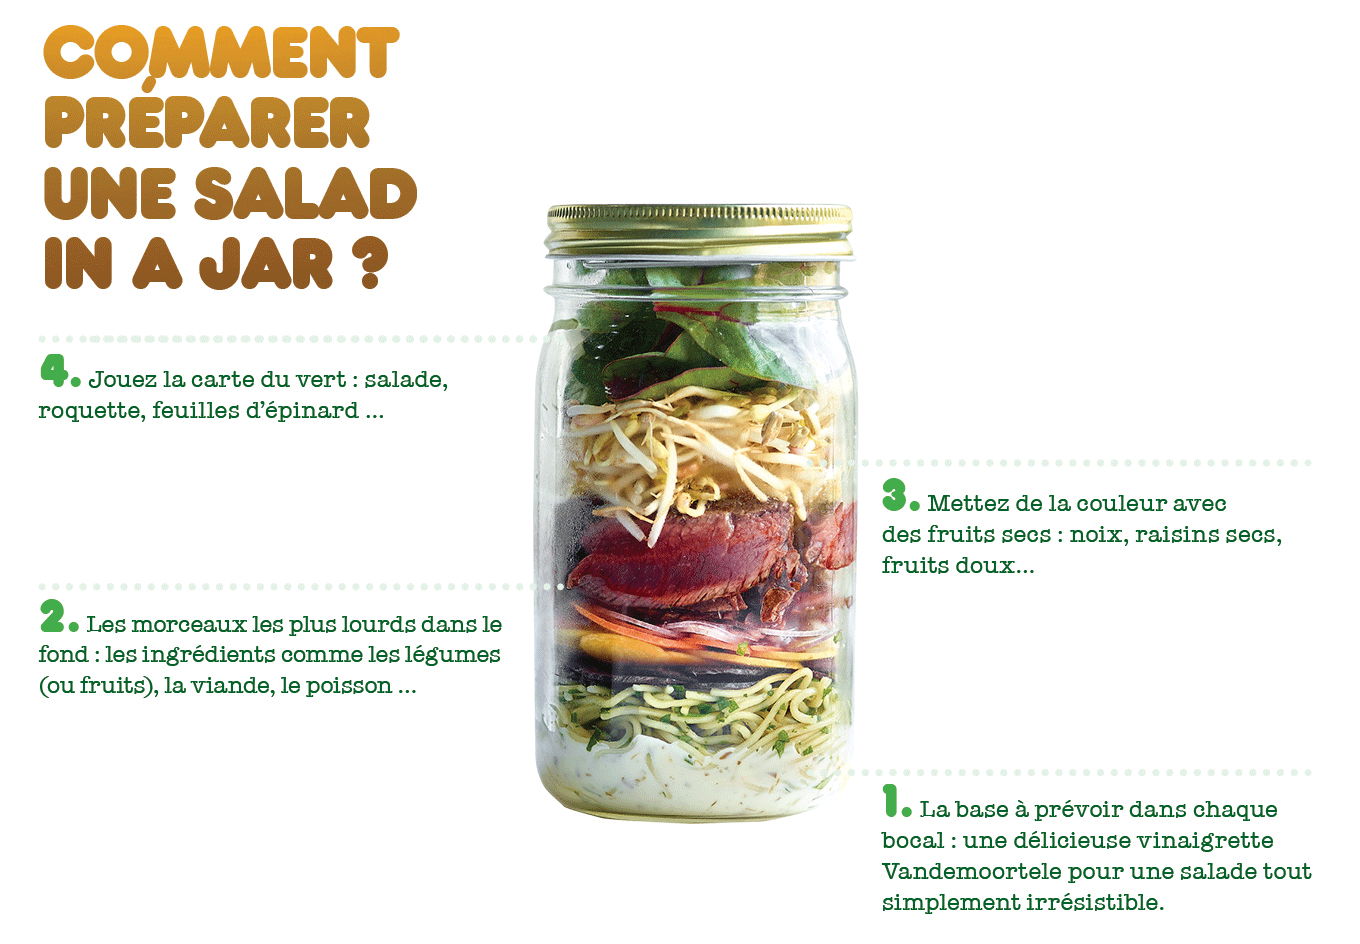 Comment préparer une Salad in a jar?